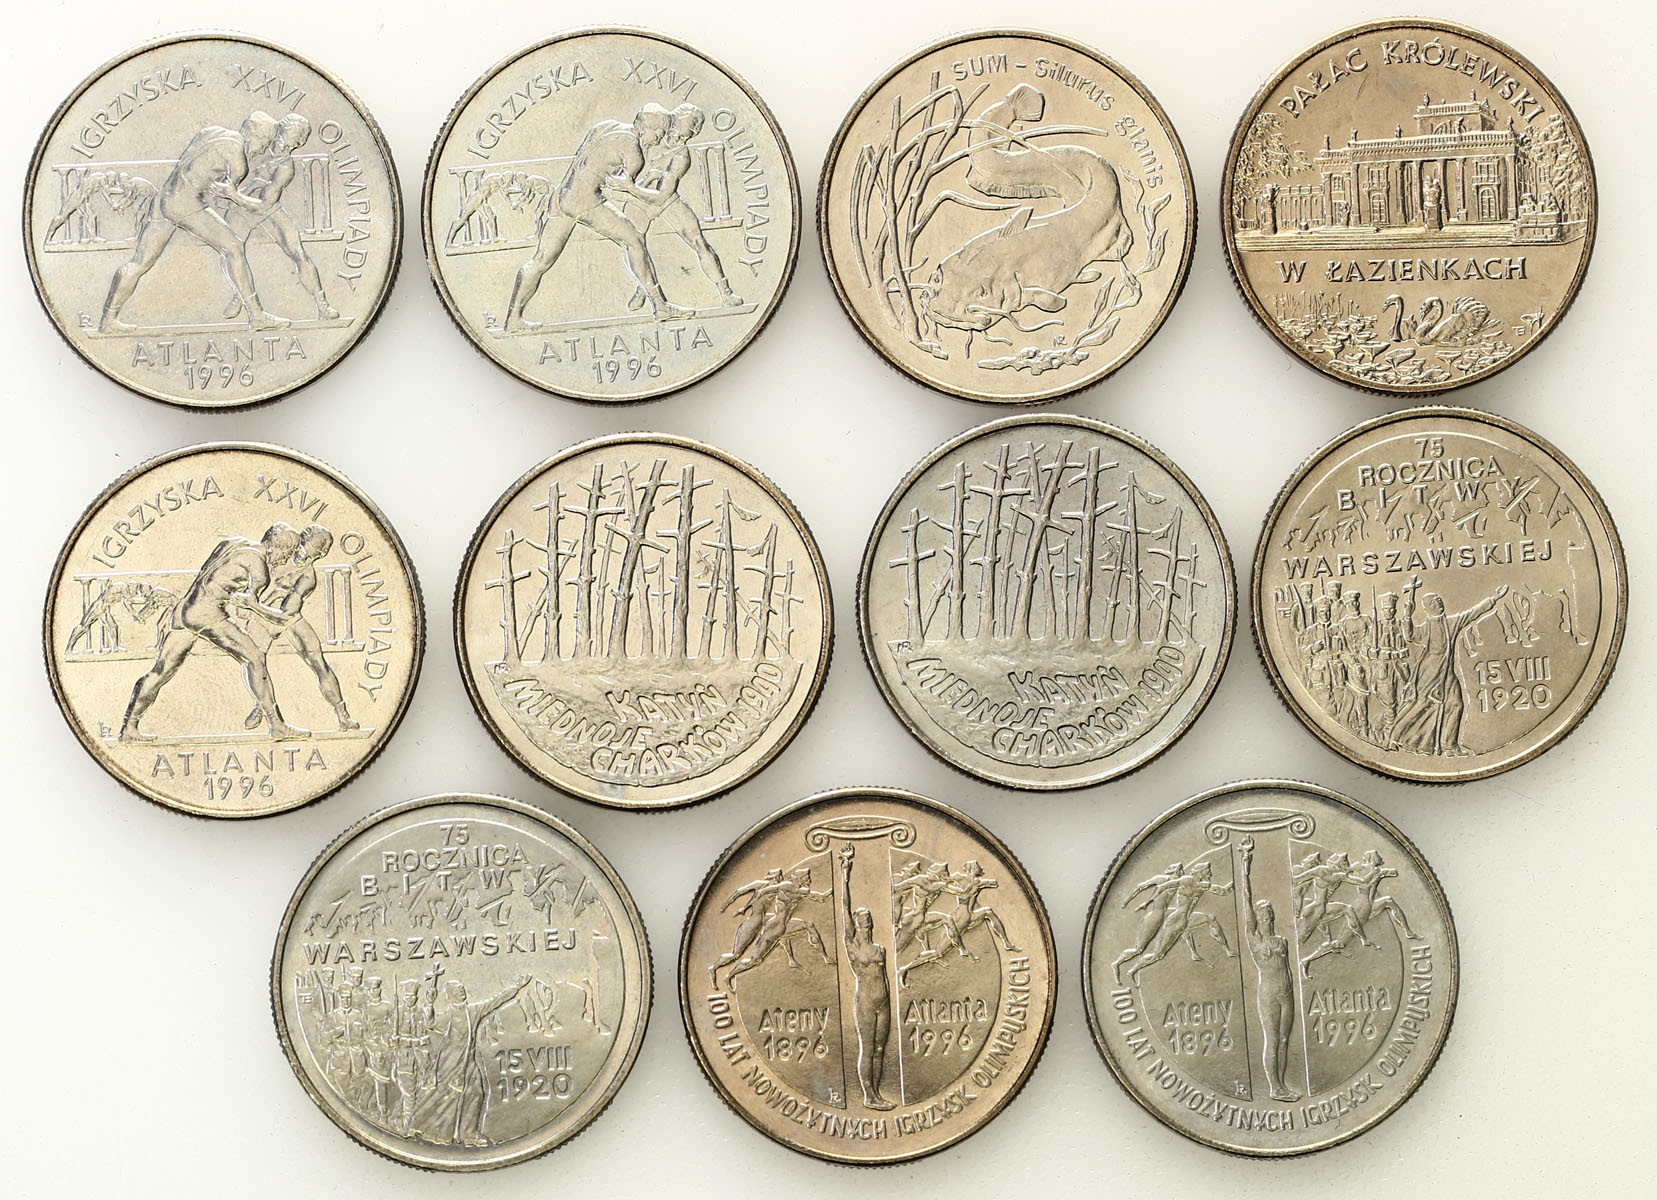 III RP. 2 złote 1995, zestaw 11 monet - DUŻY ZESTAW